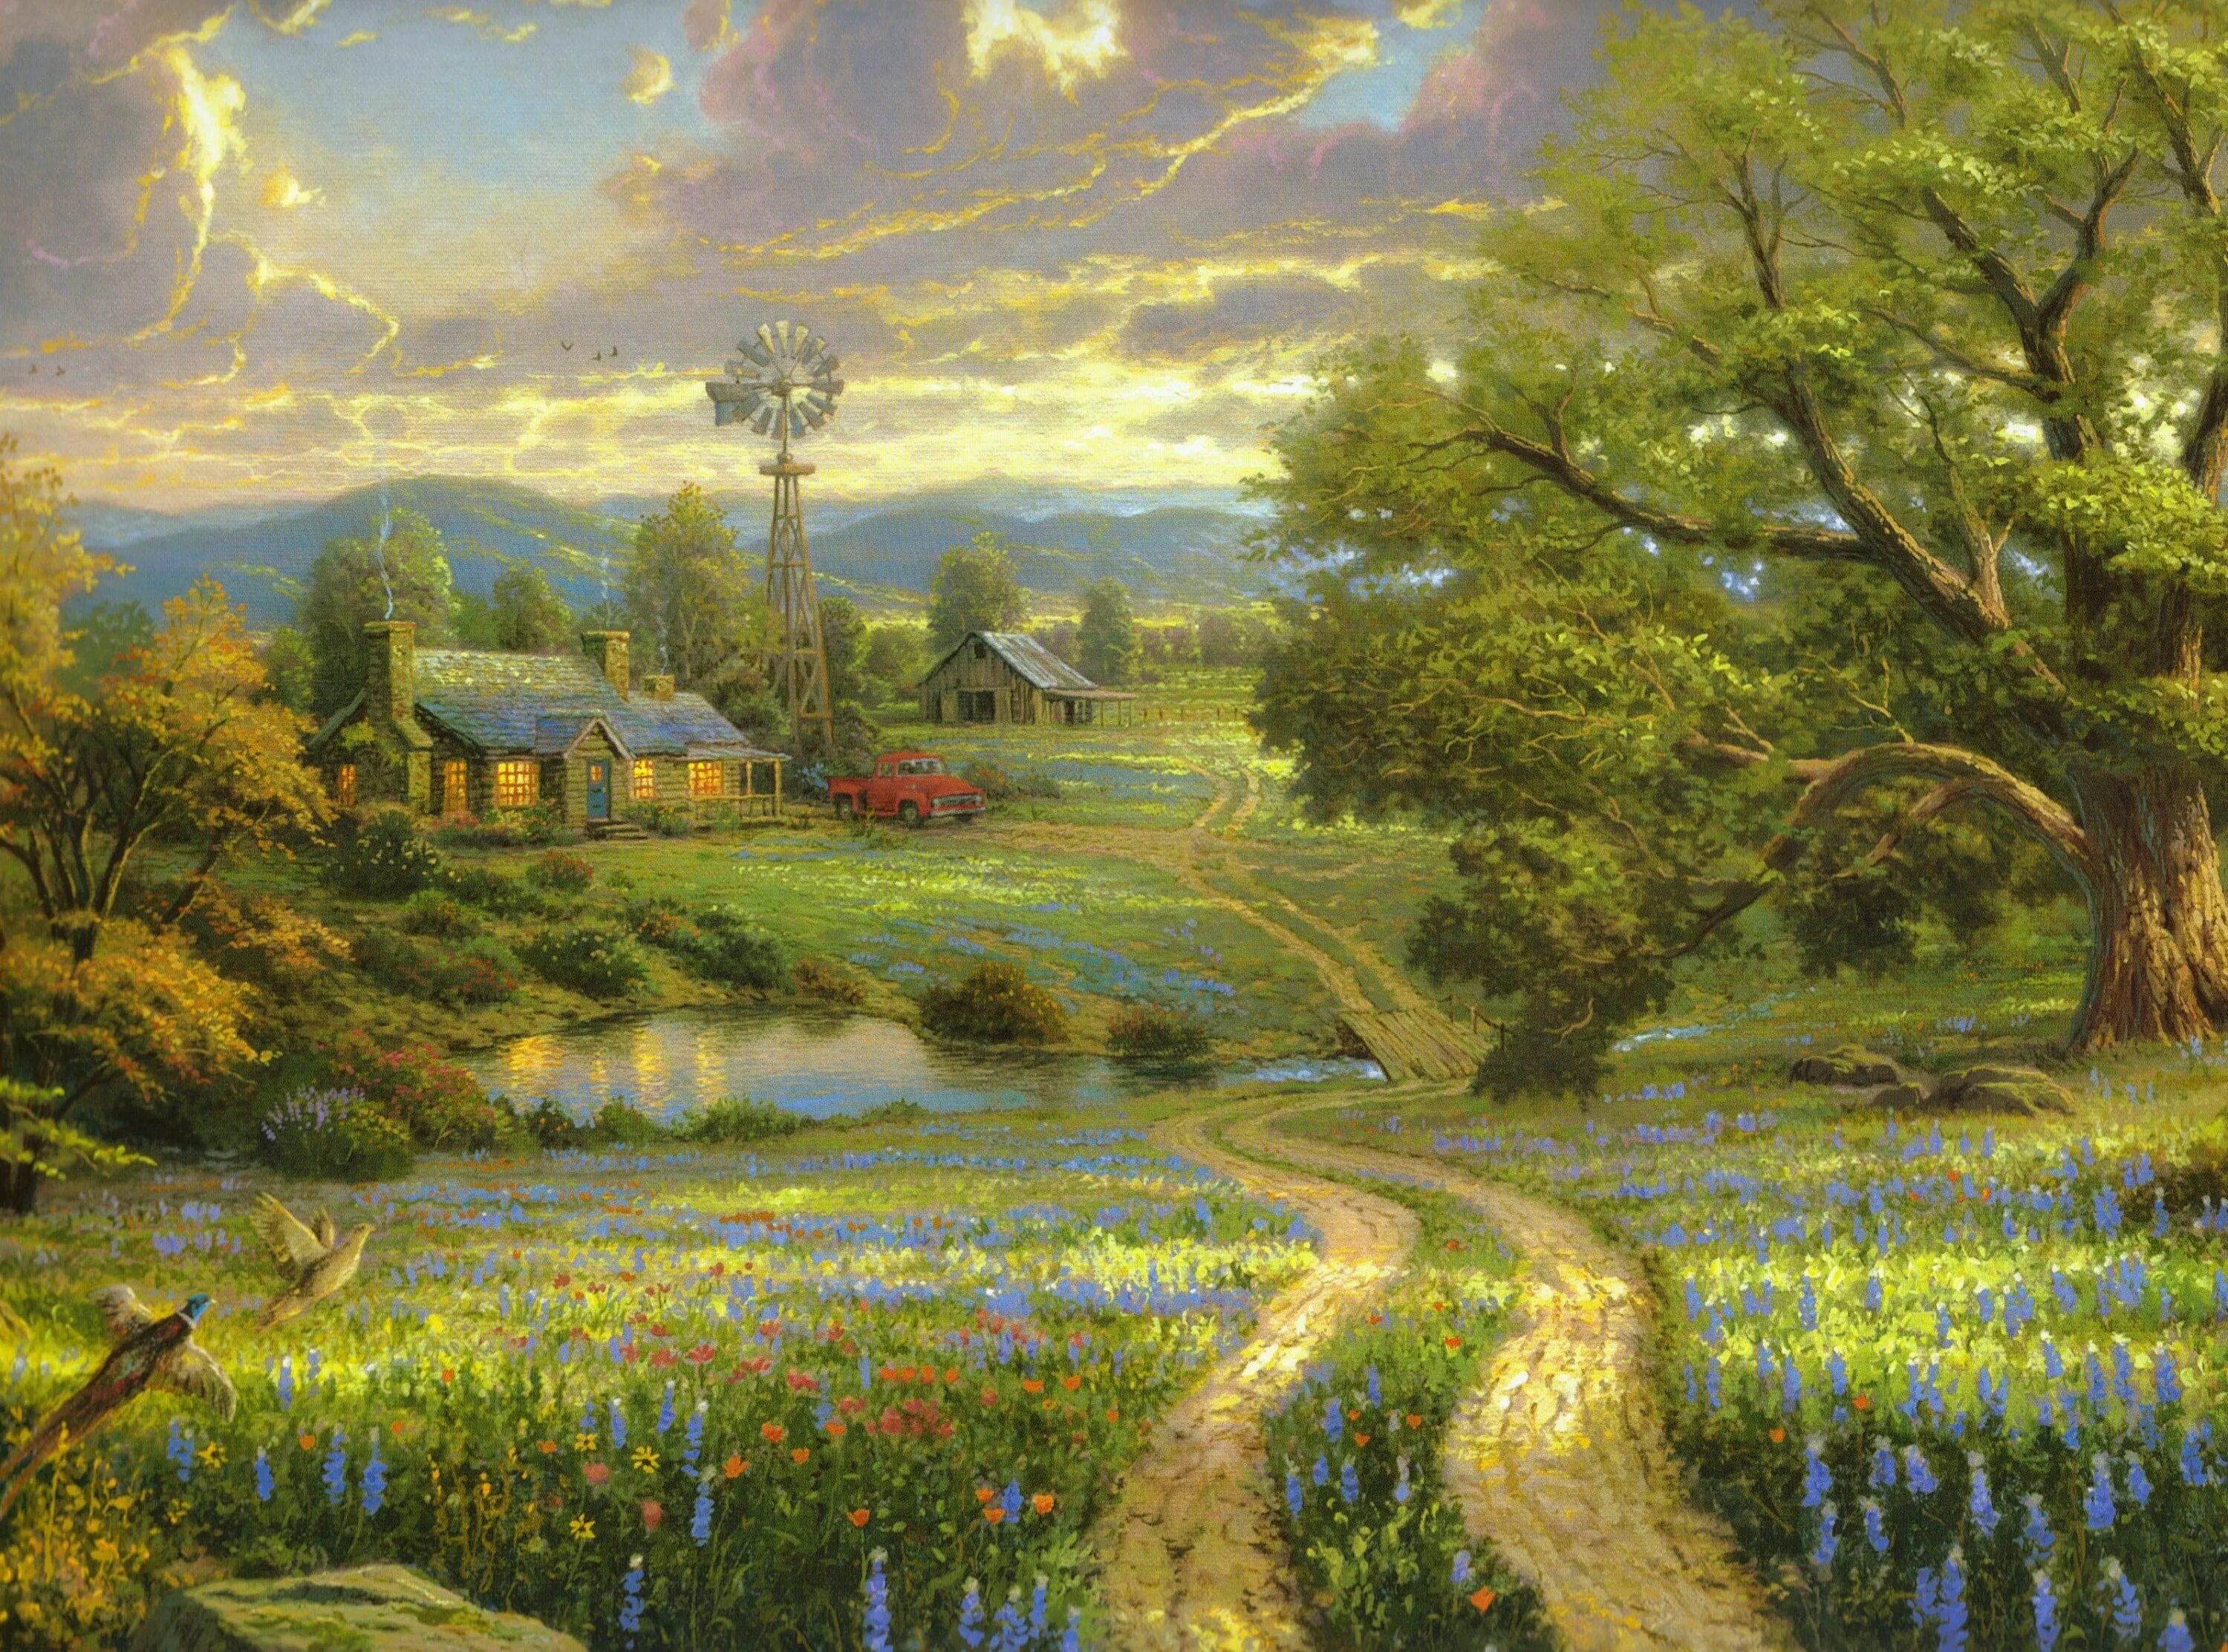 Painted landscape